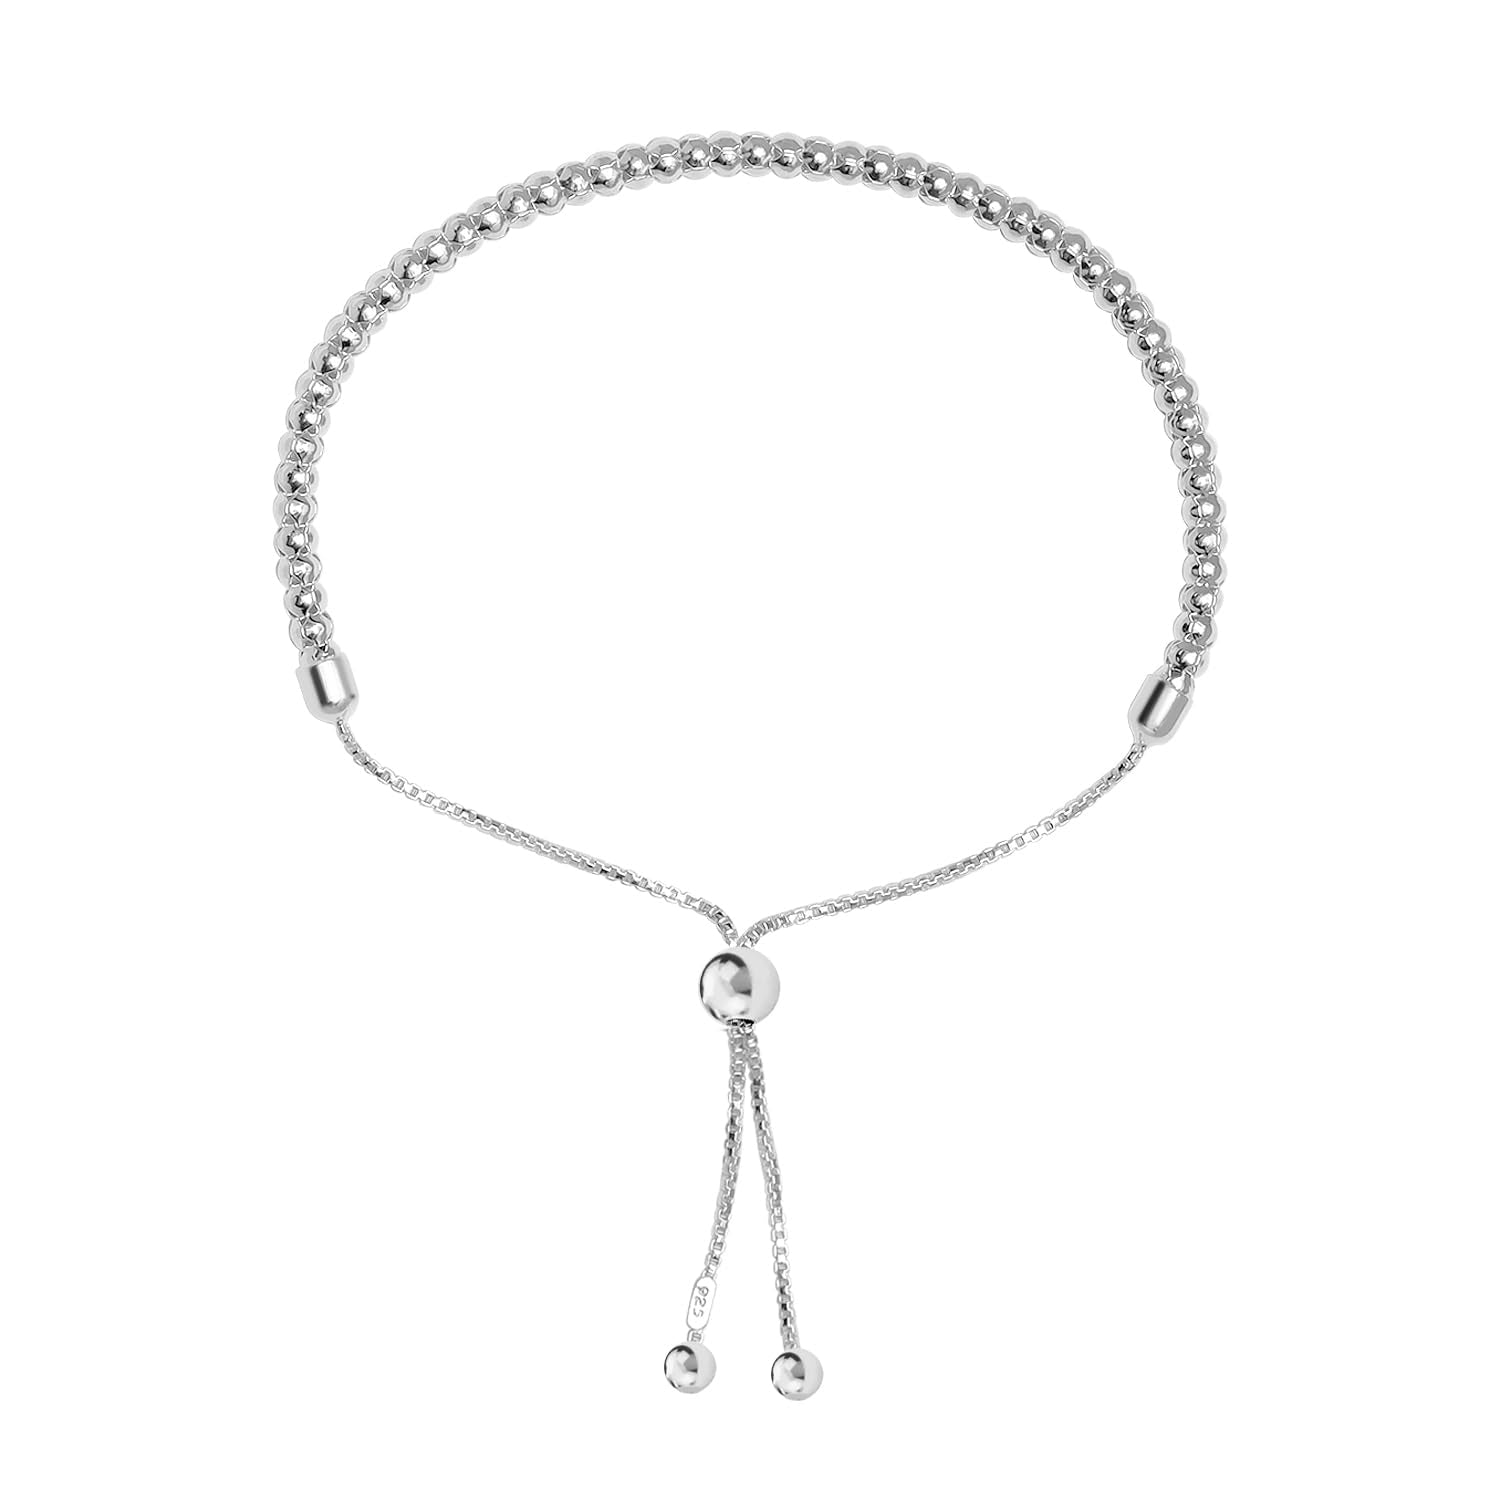 925 Sterling Silver Handmade Italian Beaded Ball Chain Adjustable Bolo Bracelets for Women